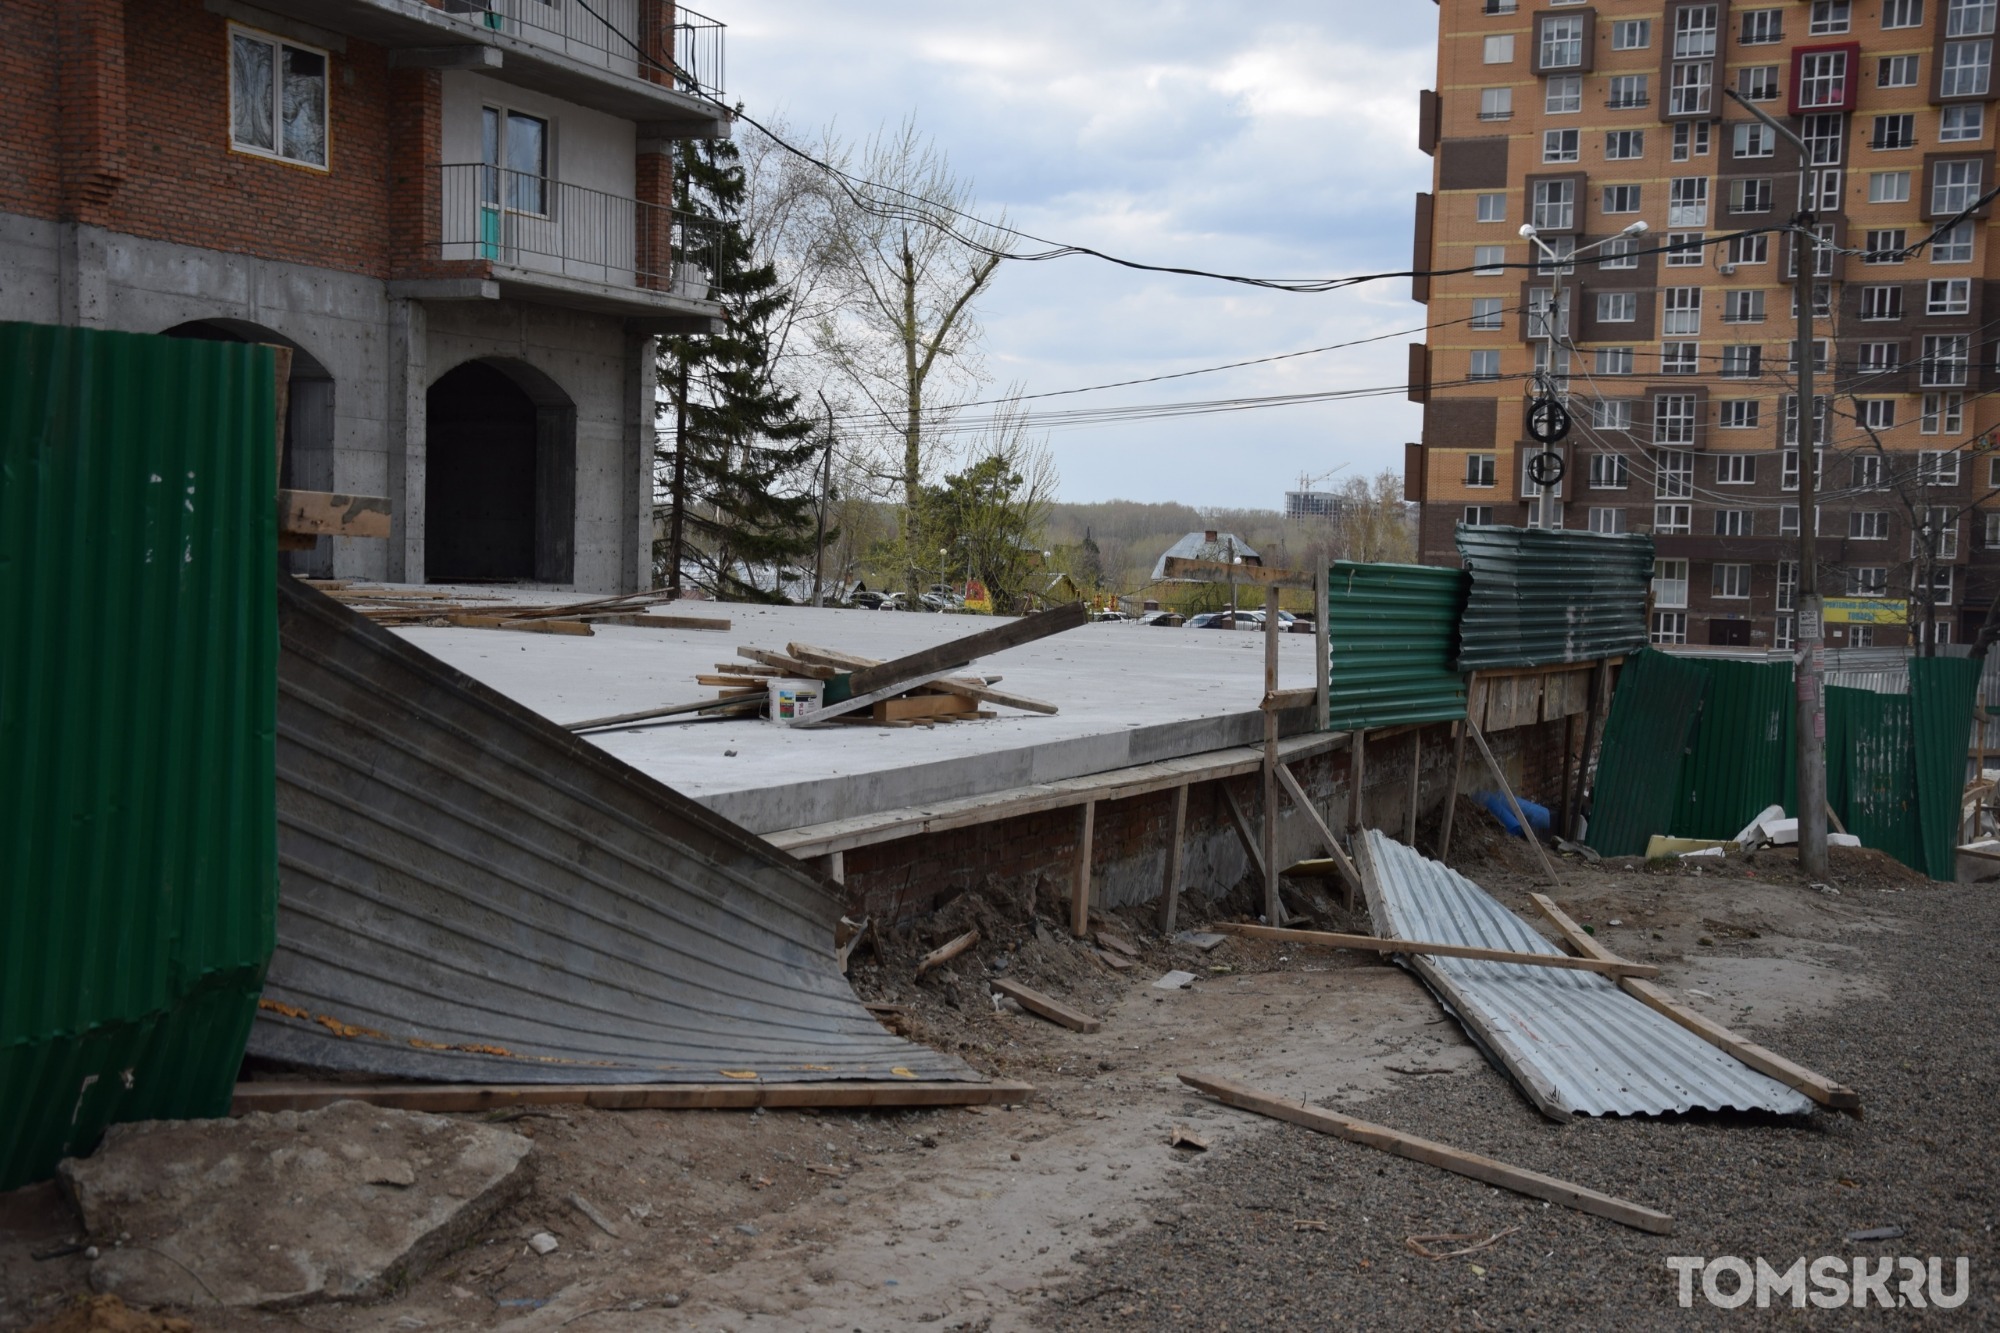 Погнутые краны, упавшие деревья и много мусора: последствия шторма в Томске